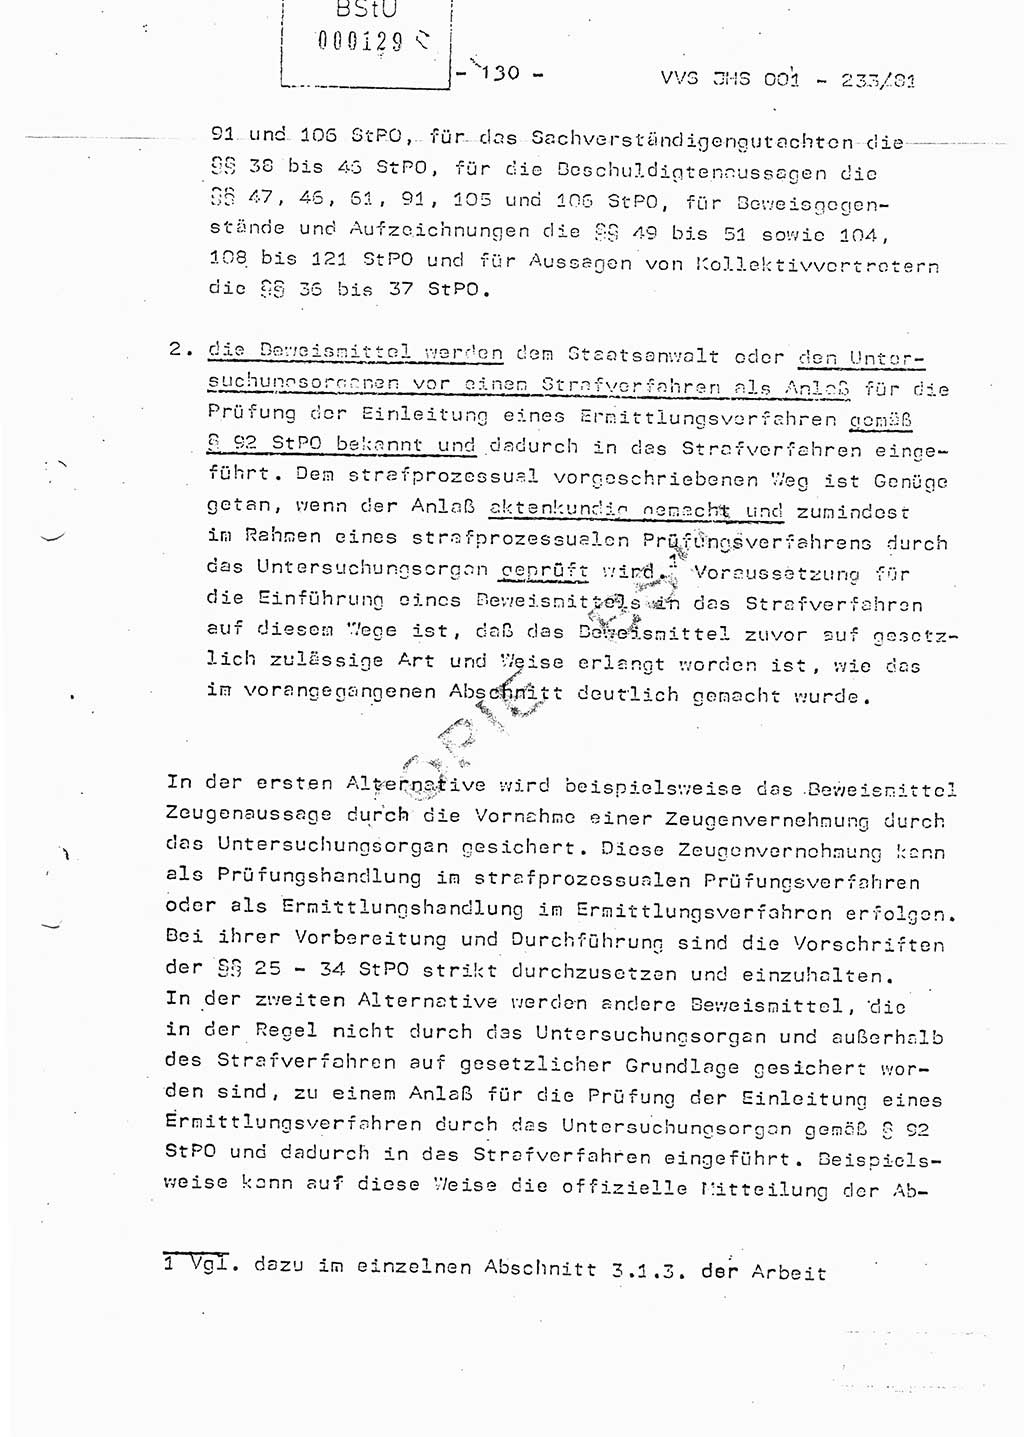 Dissertation Oberstleutnant Horst Zank (JHS), Oberstleutnant Dr. Karl-Heinz Knoblauch (JHS), Oberstleutnant Gustav-Adolf Kowalewski (HA Ⅸ), Oberstleutnant Wolfgang Plötner (HA Ⅸ), Ministerium für Staatssicherheit (MfS) [Deutsche Demokratische Republik (DDR)], Juristische Hochschule (JHS), Vertrauliche Verschlußsache (VVS) o001-233/81, Potsdam 1981, Blatt 130 (Diss. MfS DDR JHS VVS o001-233/81 1981, Bl. 130)